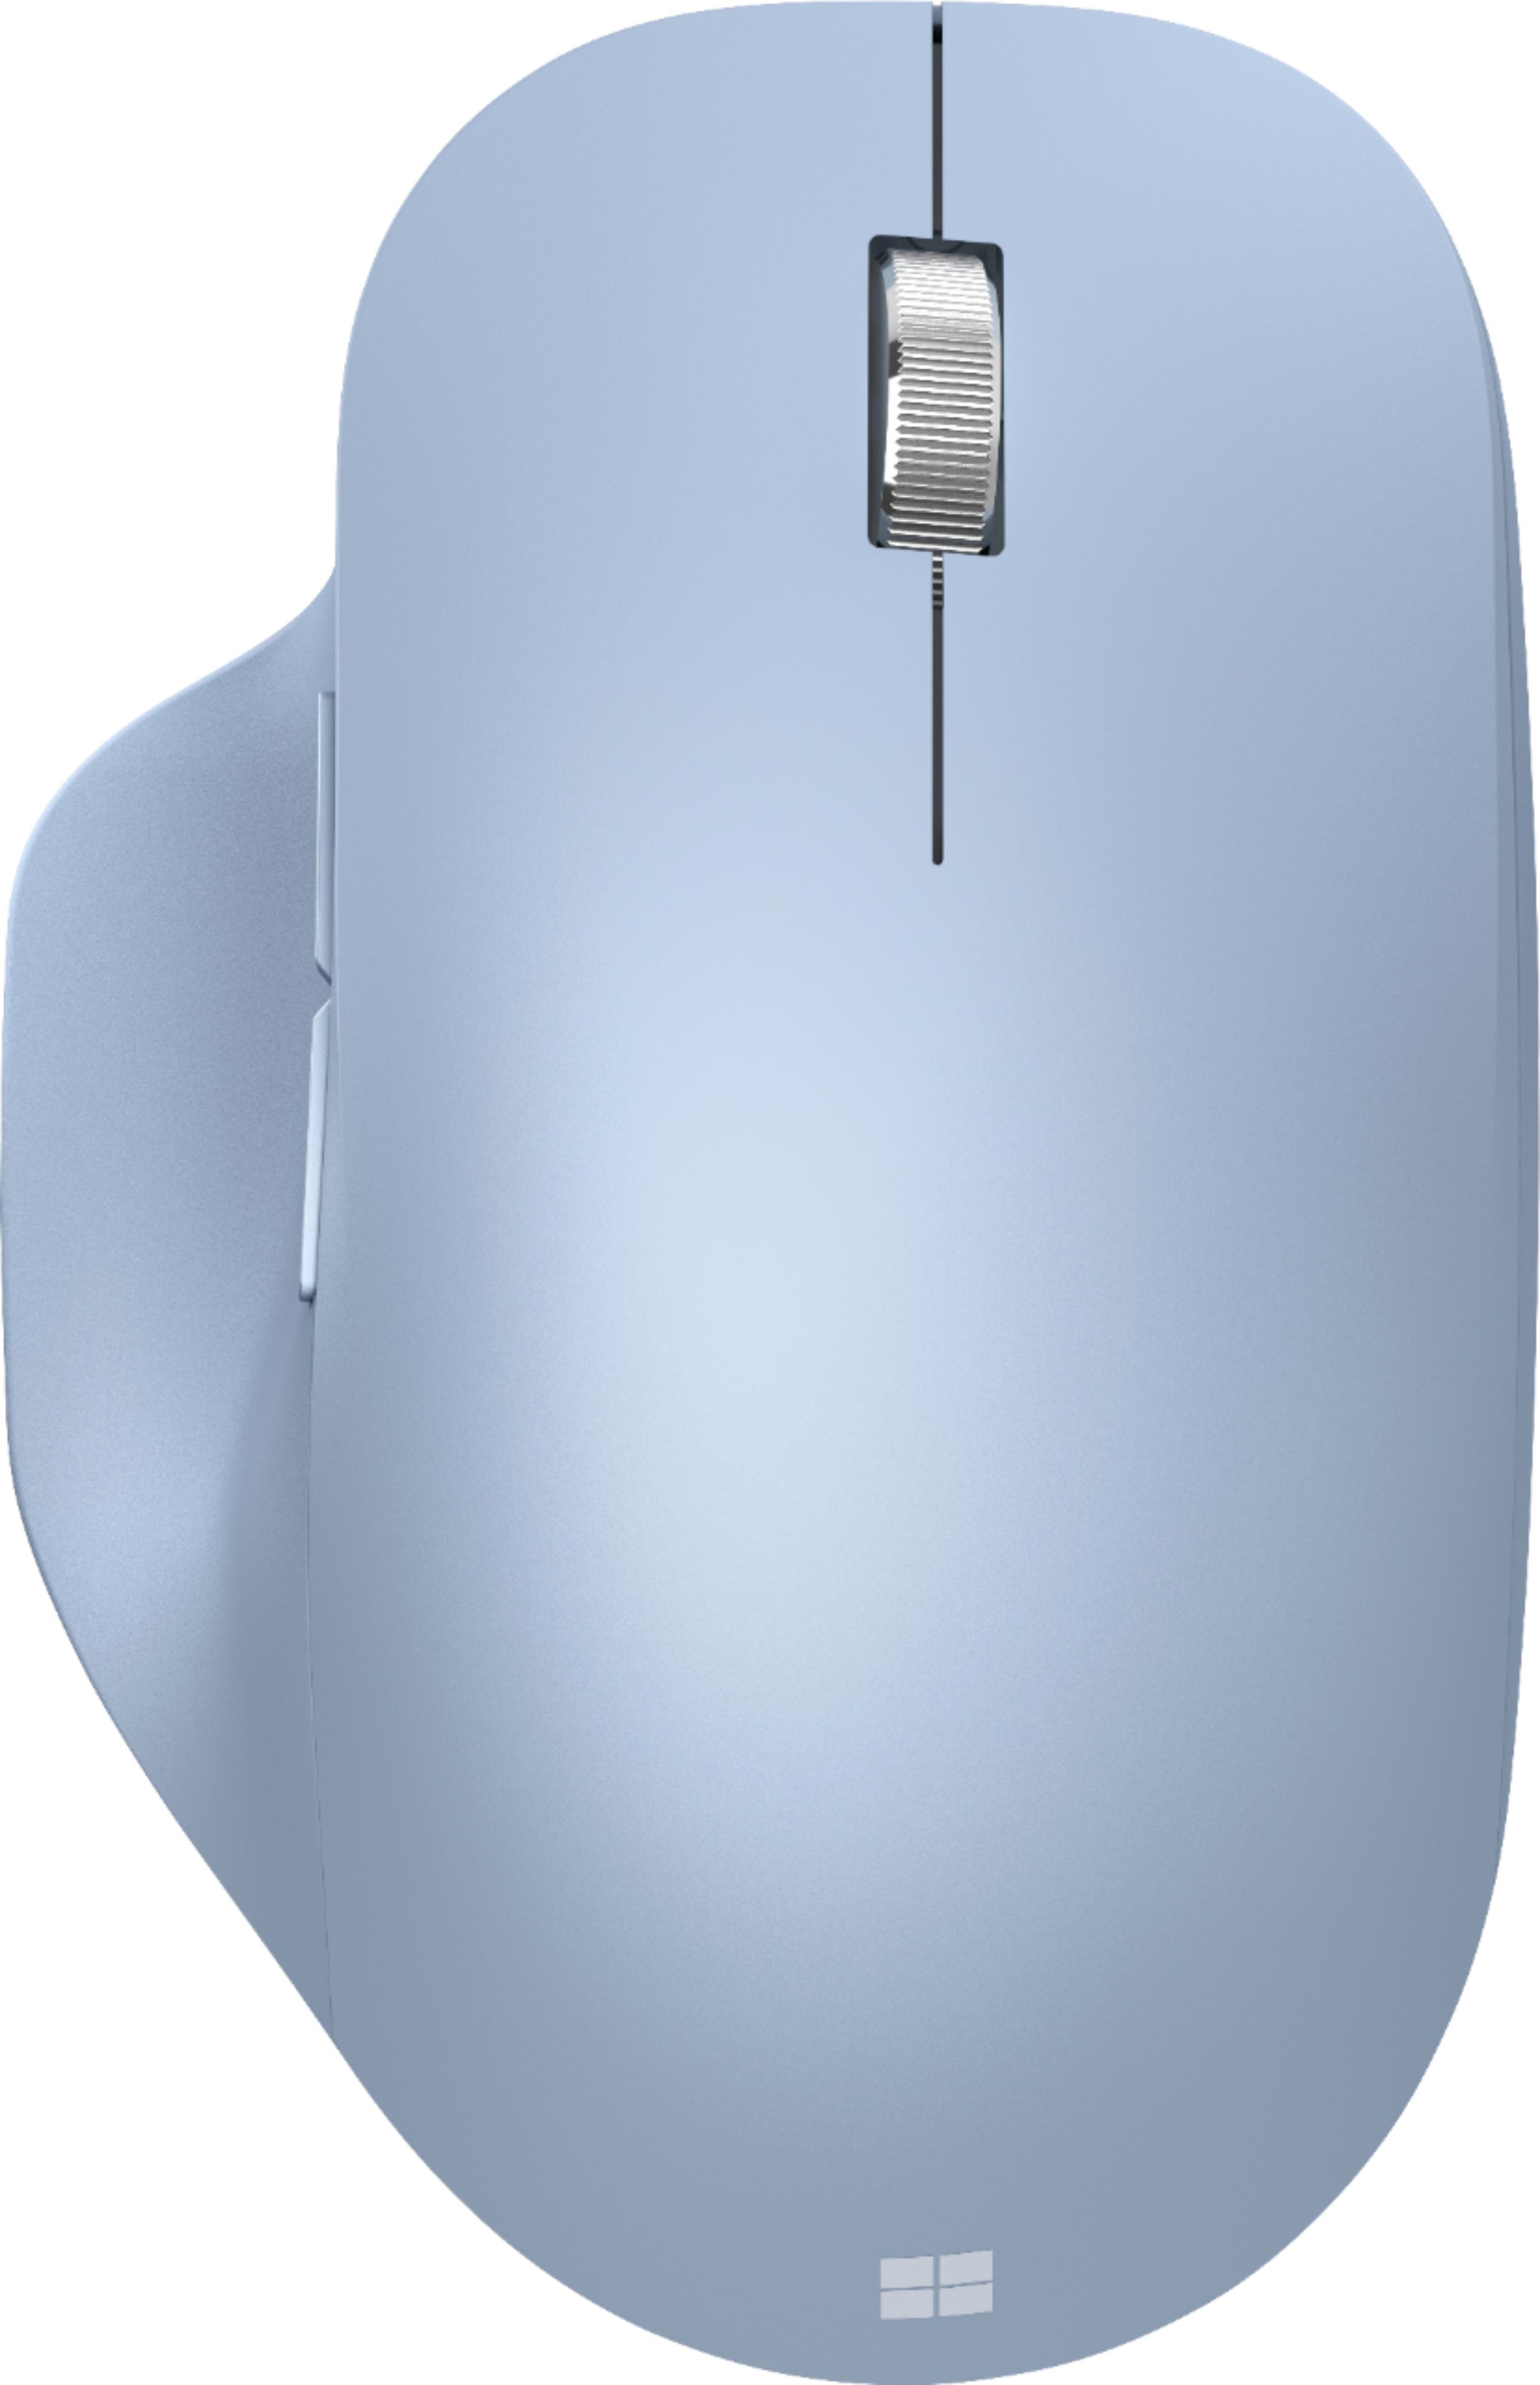 Souris Microsoft Souris Microsoft Bluetooth® Mouse – Bleu Pastel - MS BLUET  MOUSE - BLU